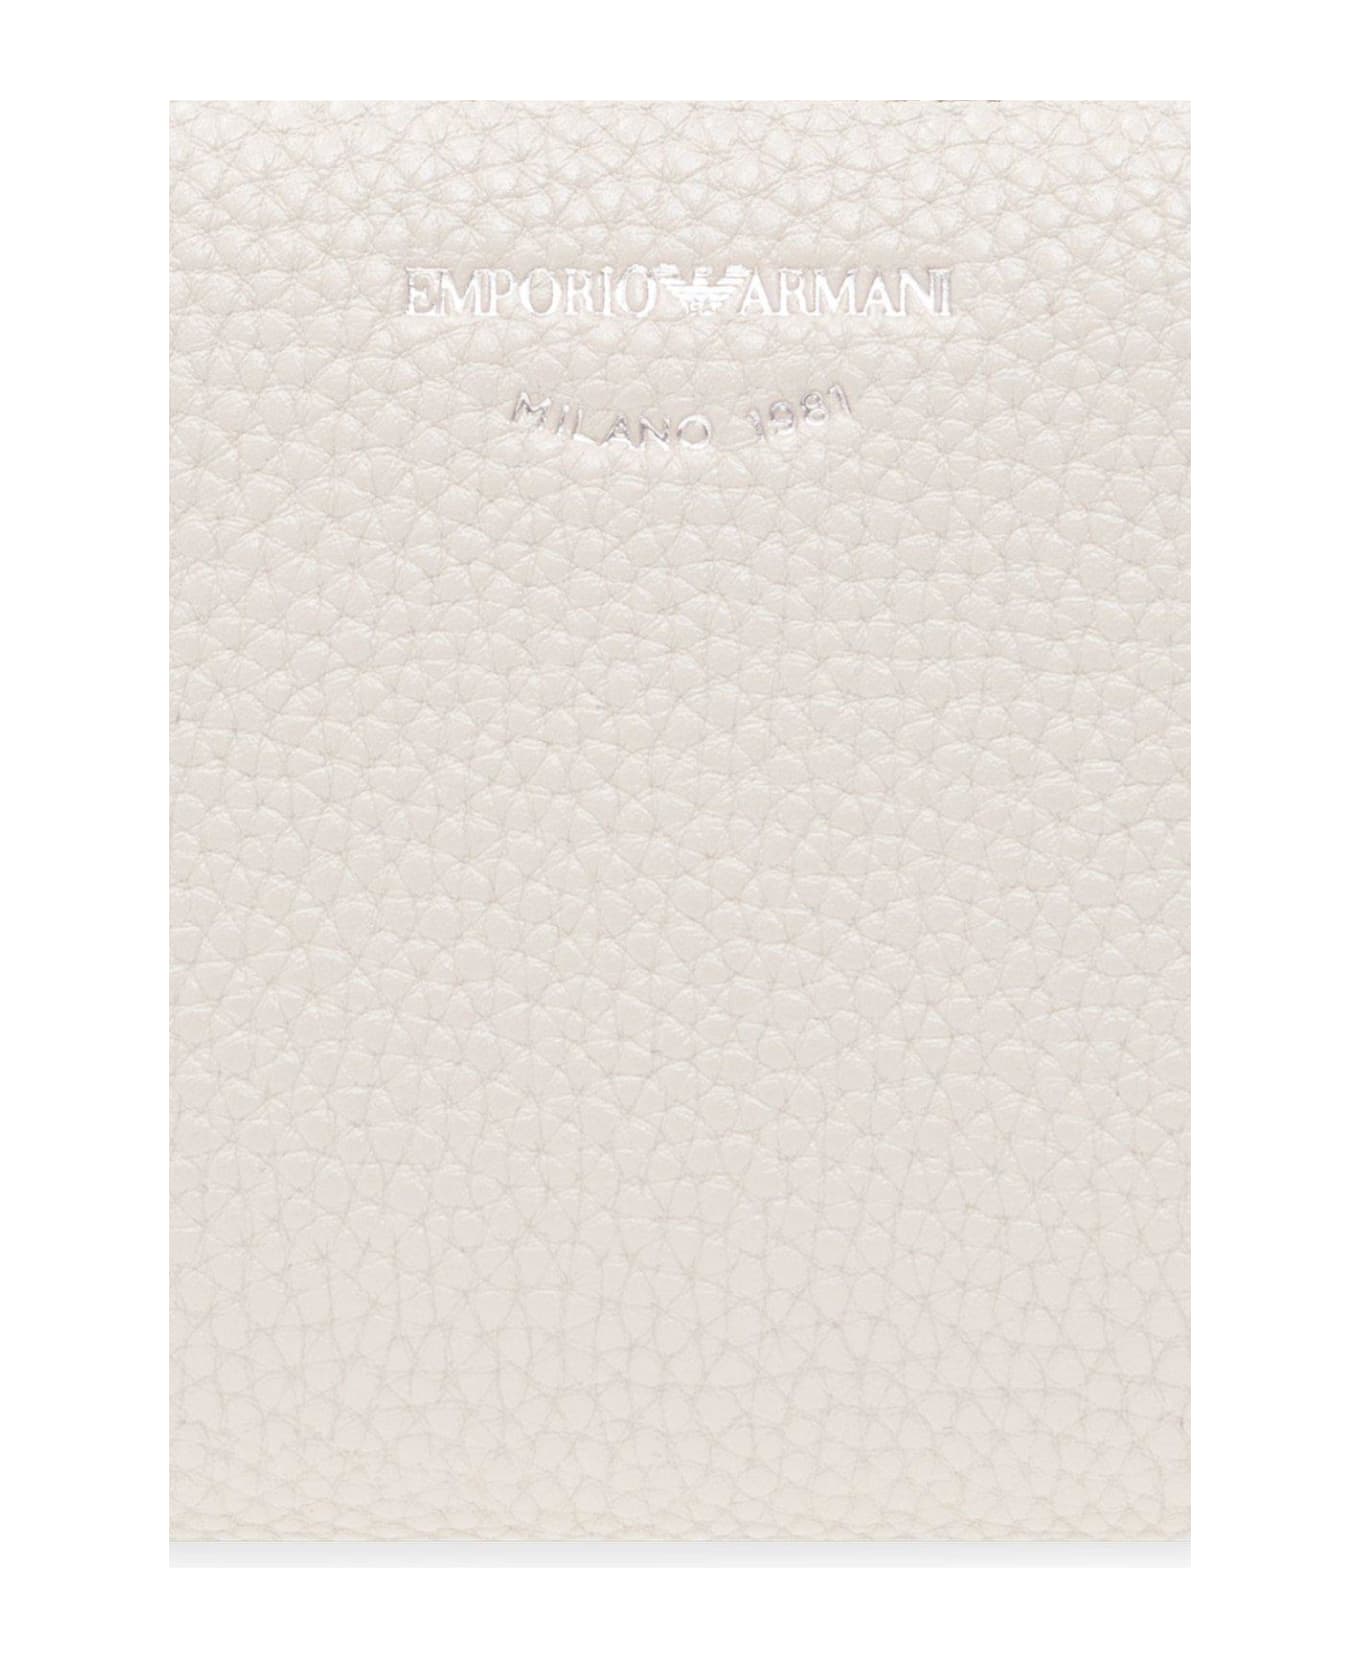 Emporio Armani Wallet With Logo - Grigio